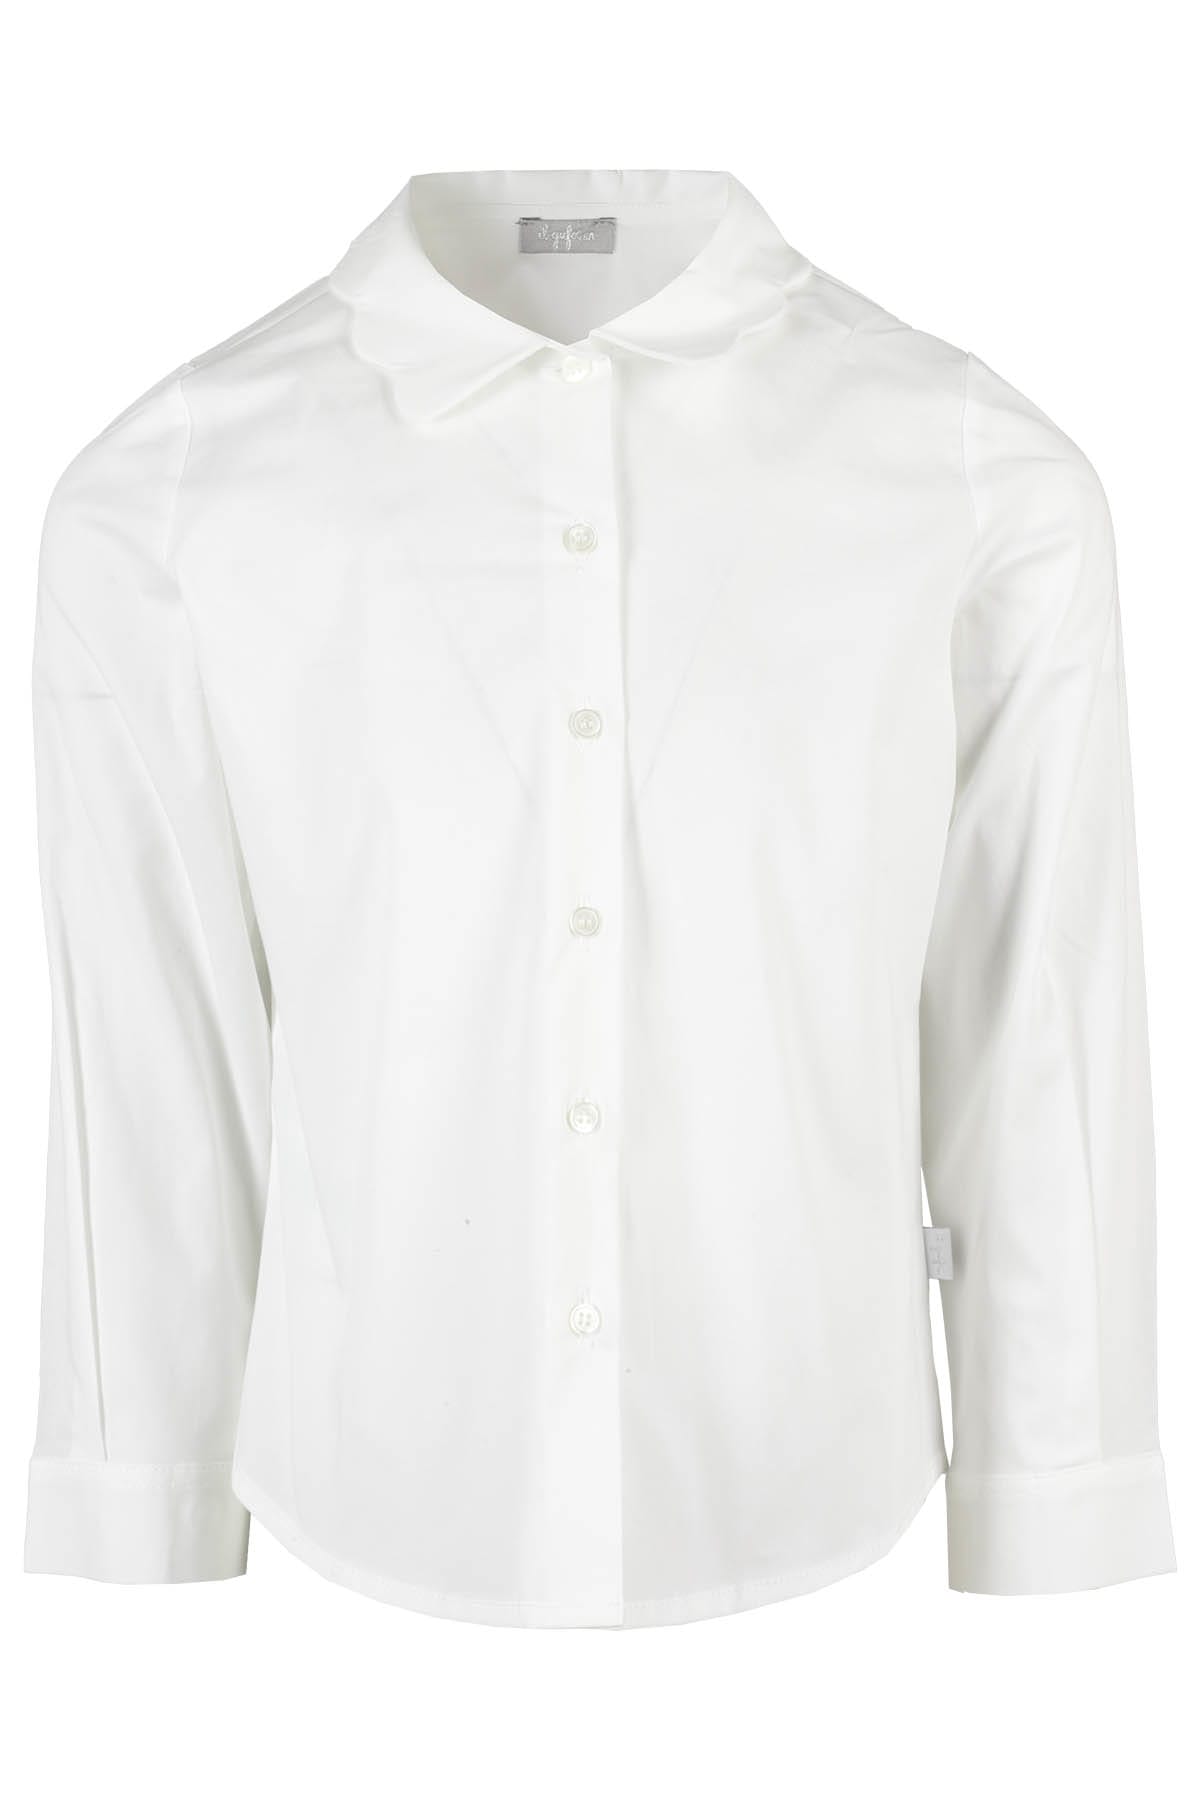 Il Gufo Kids' Camicia M Lunga In Bianco